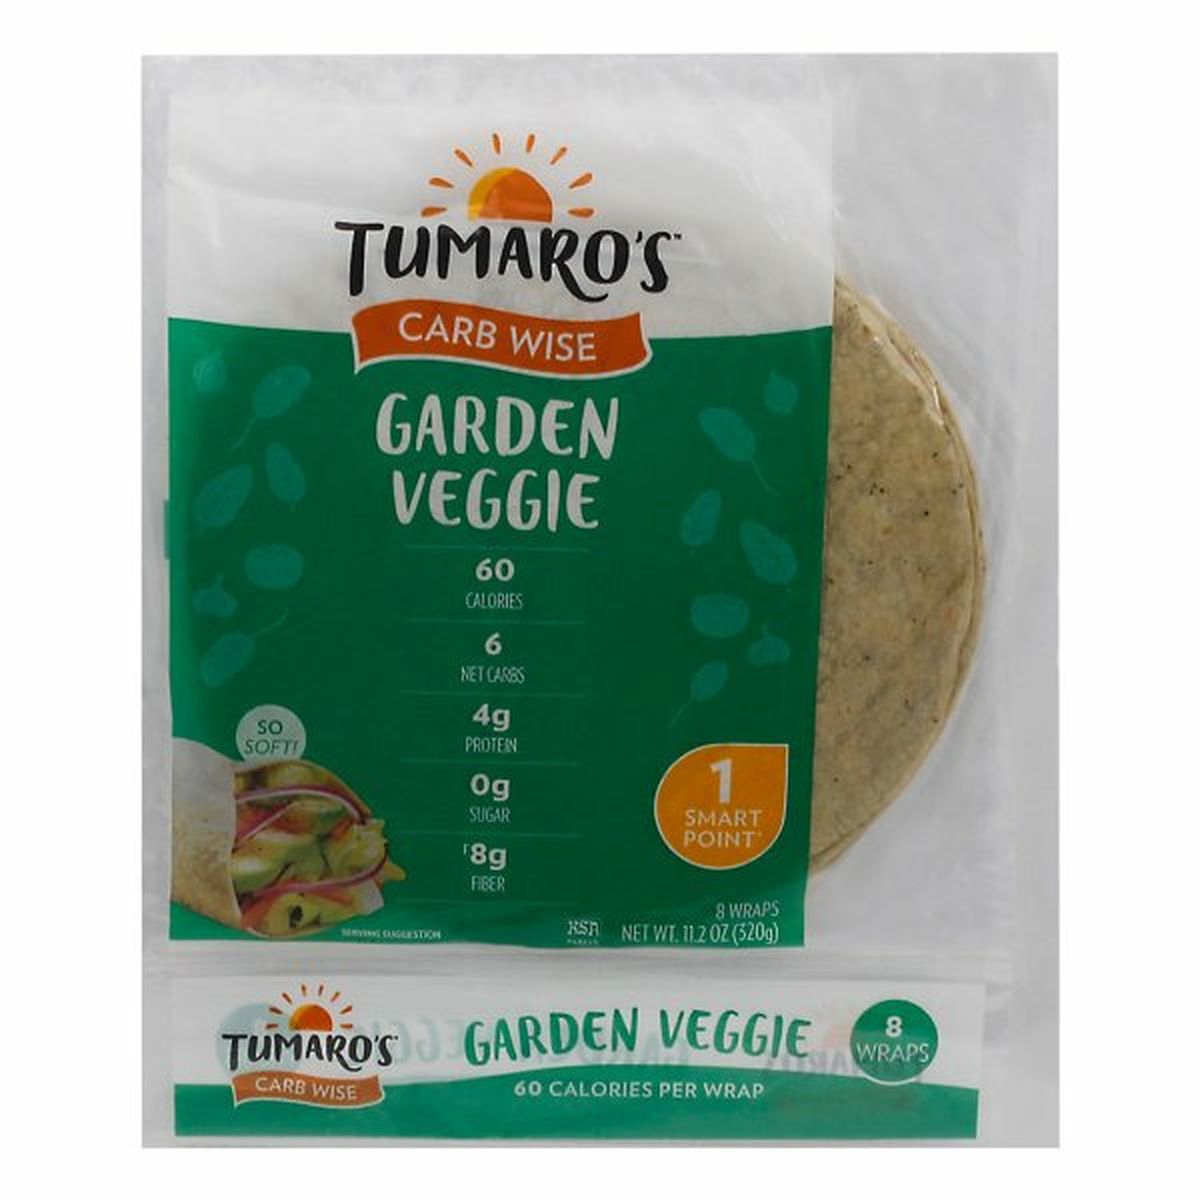 Calories in Tumaro's Carb Wise Wraps, Garden Veggie